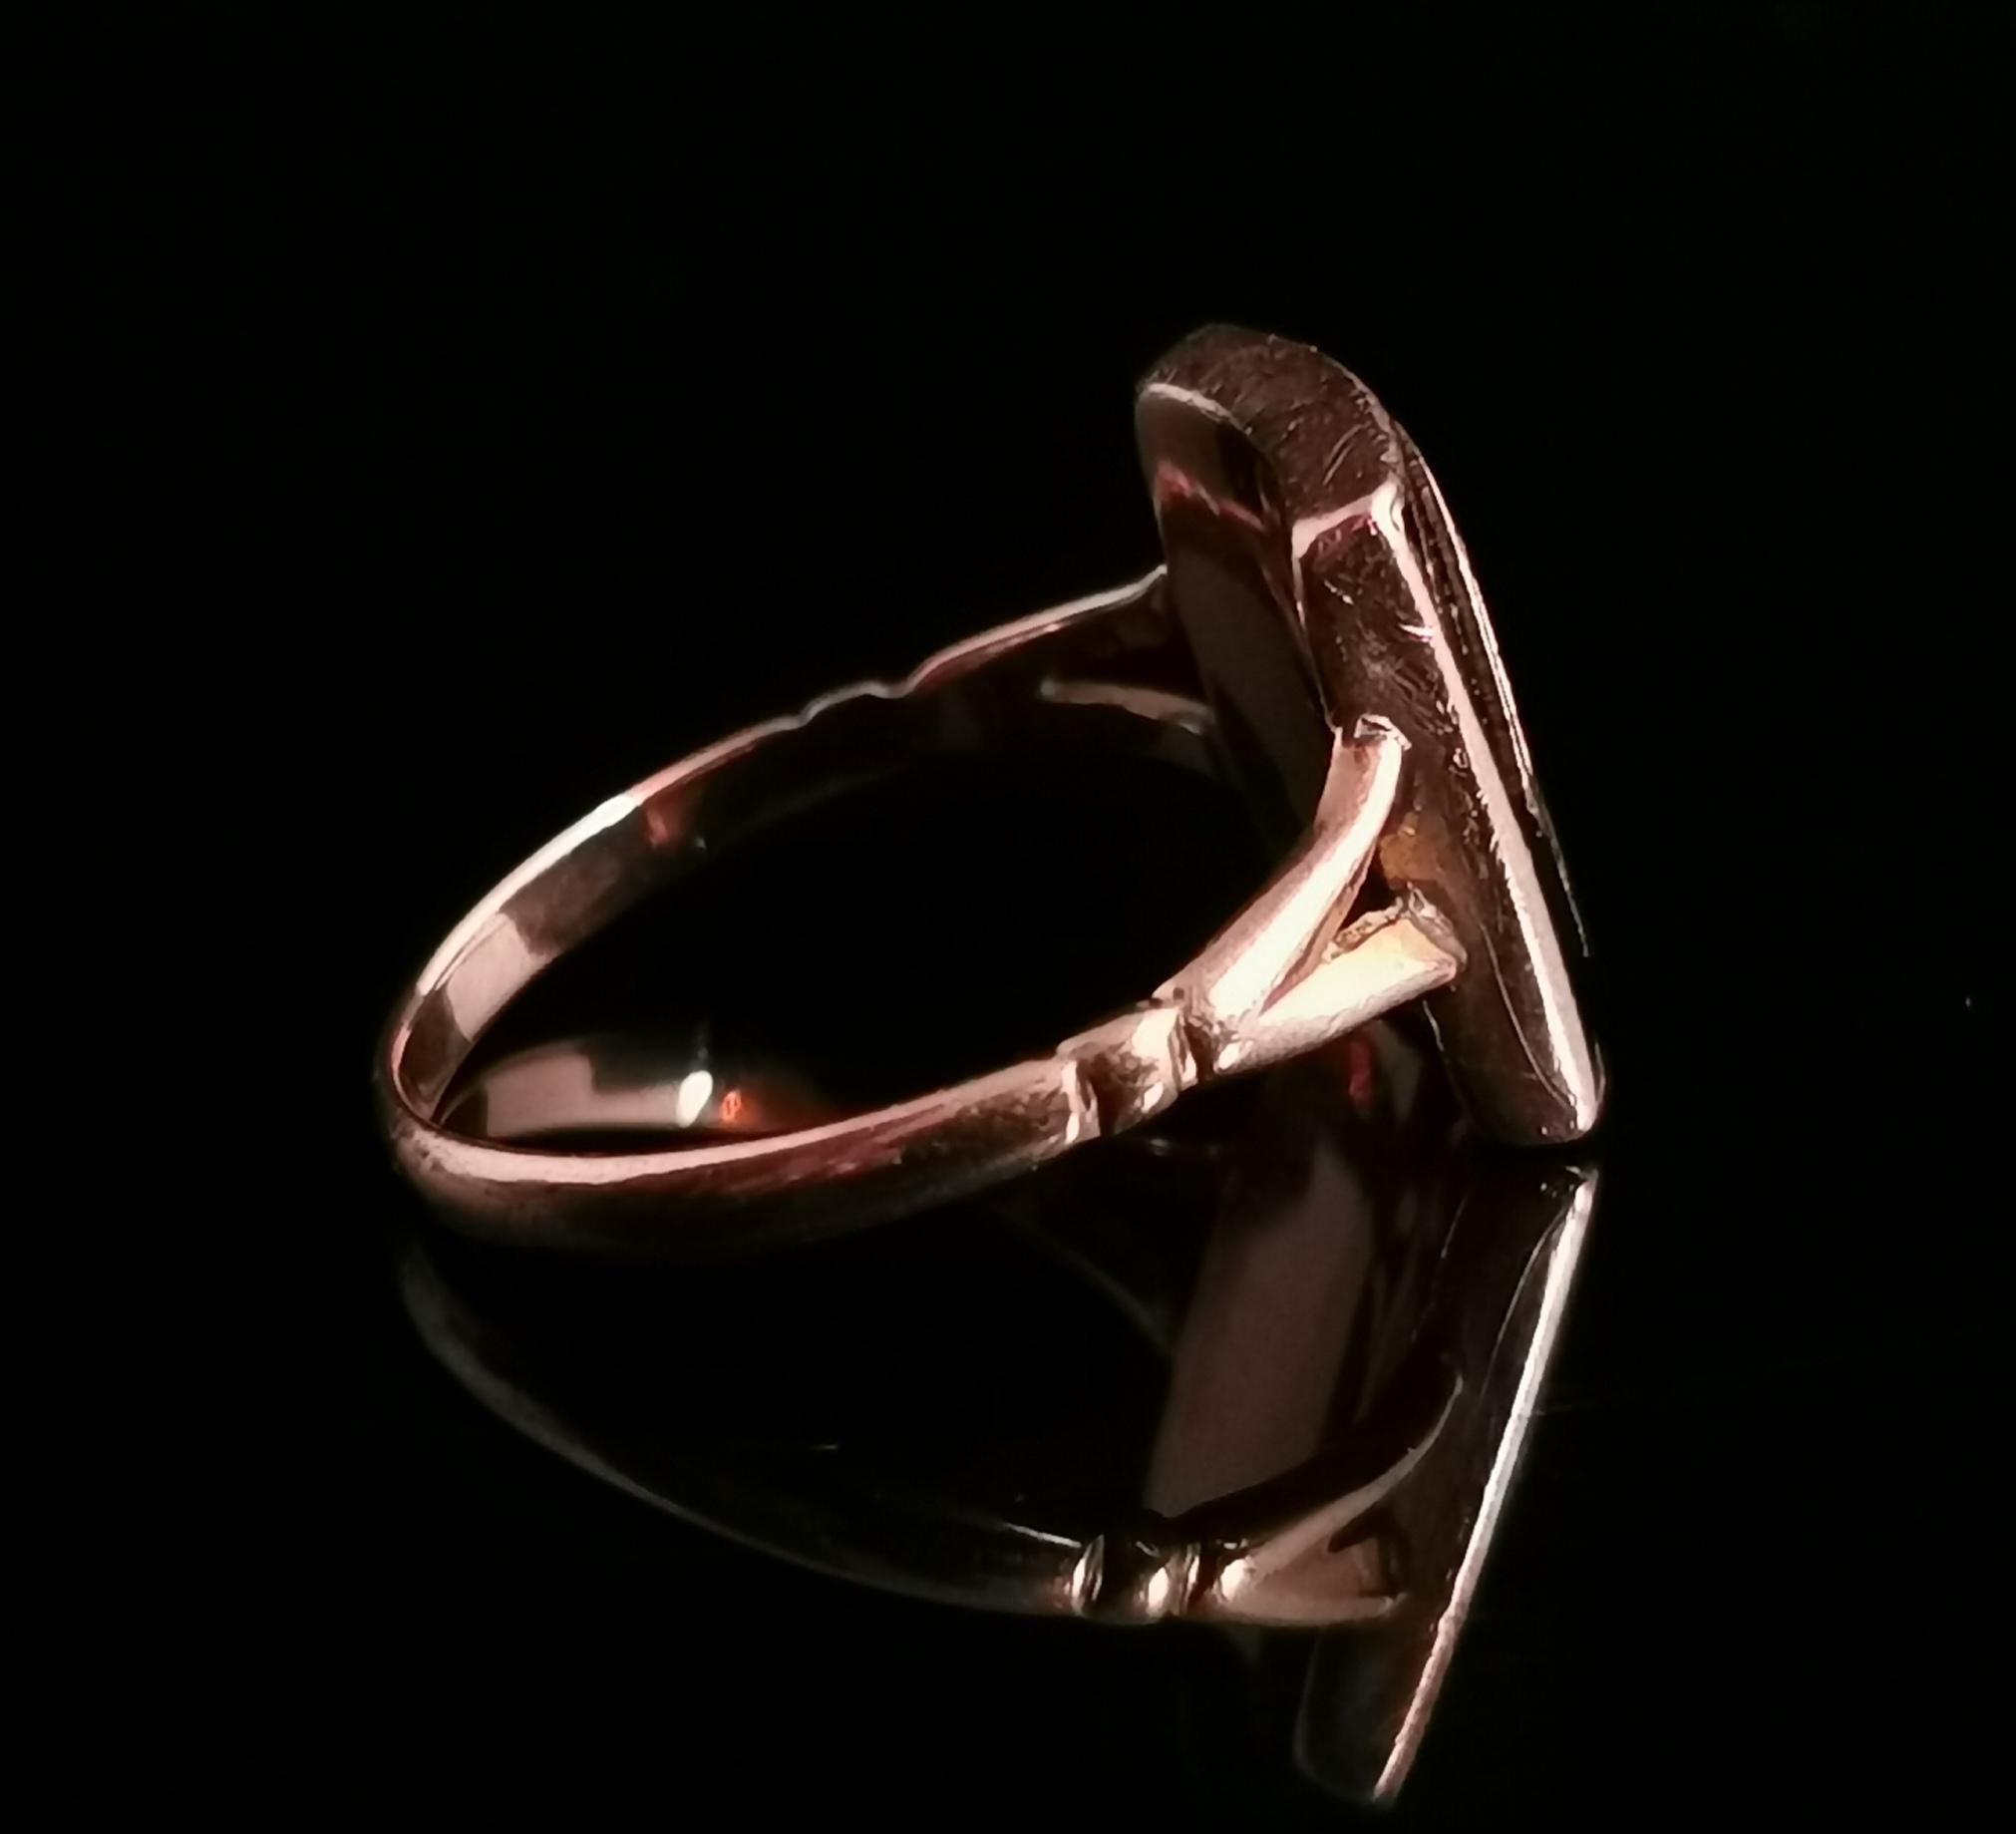 Women's Victorian Mourning Ring, Initial C, 9 Karat Rose Gold and Black Enamel